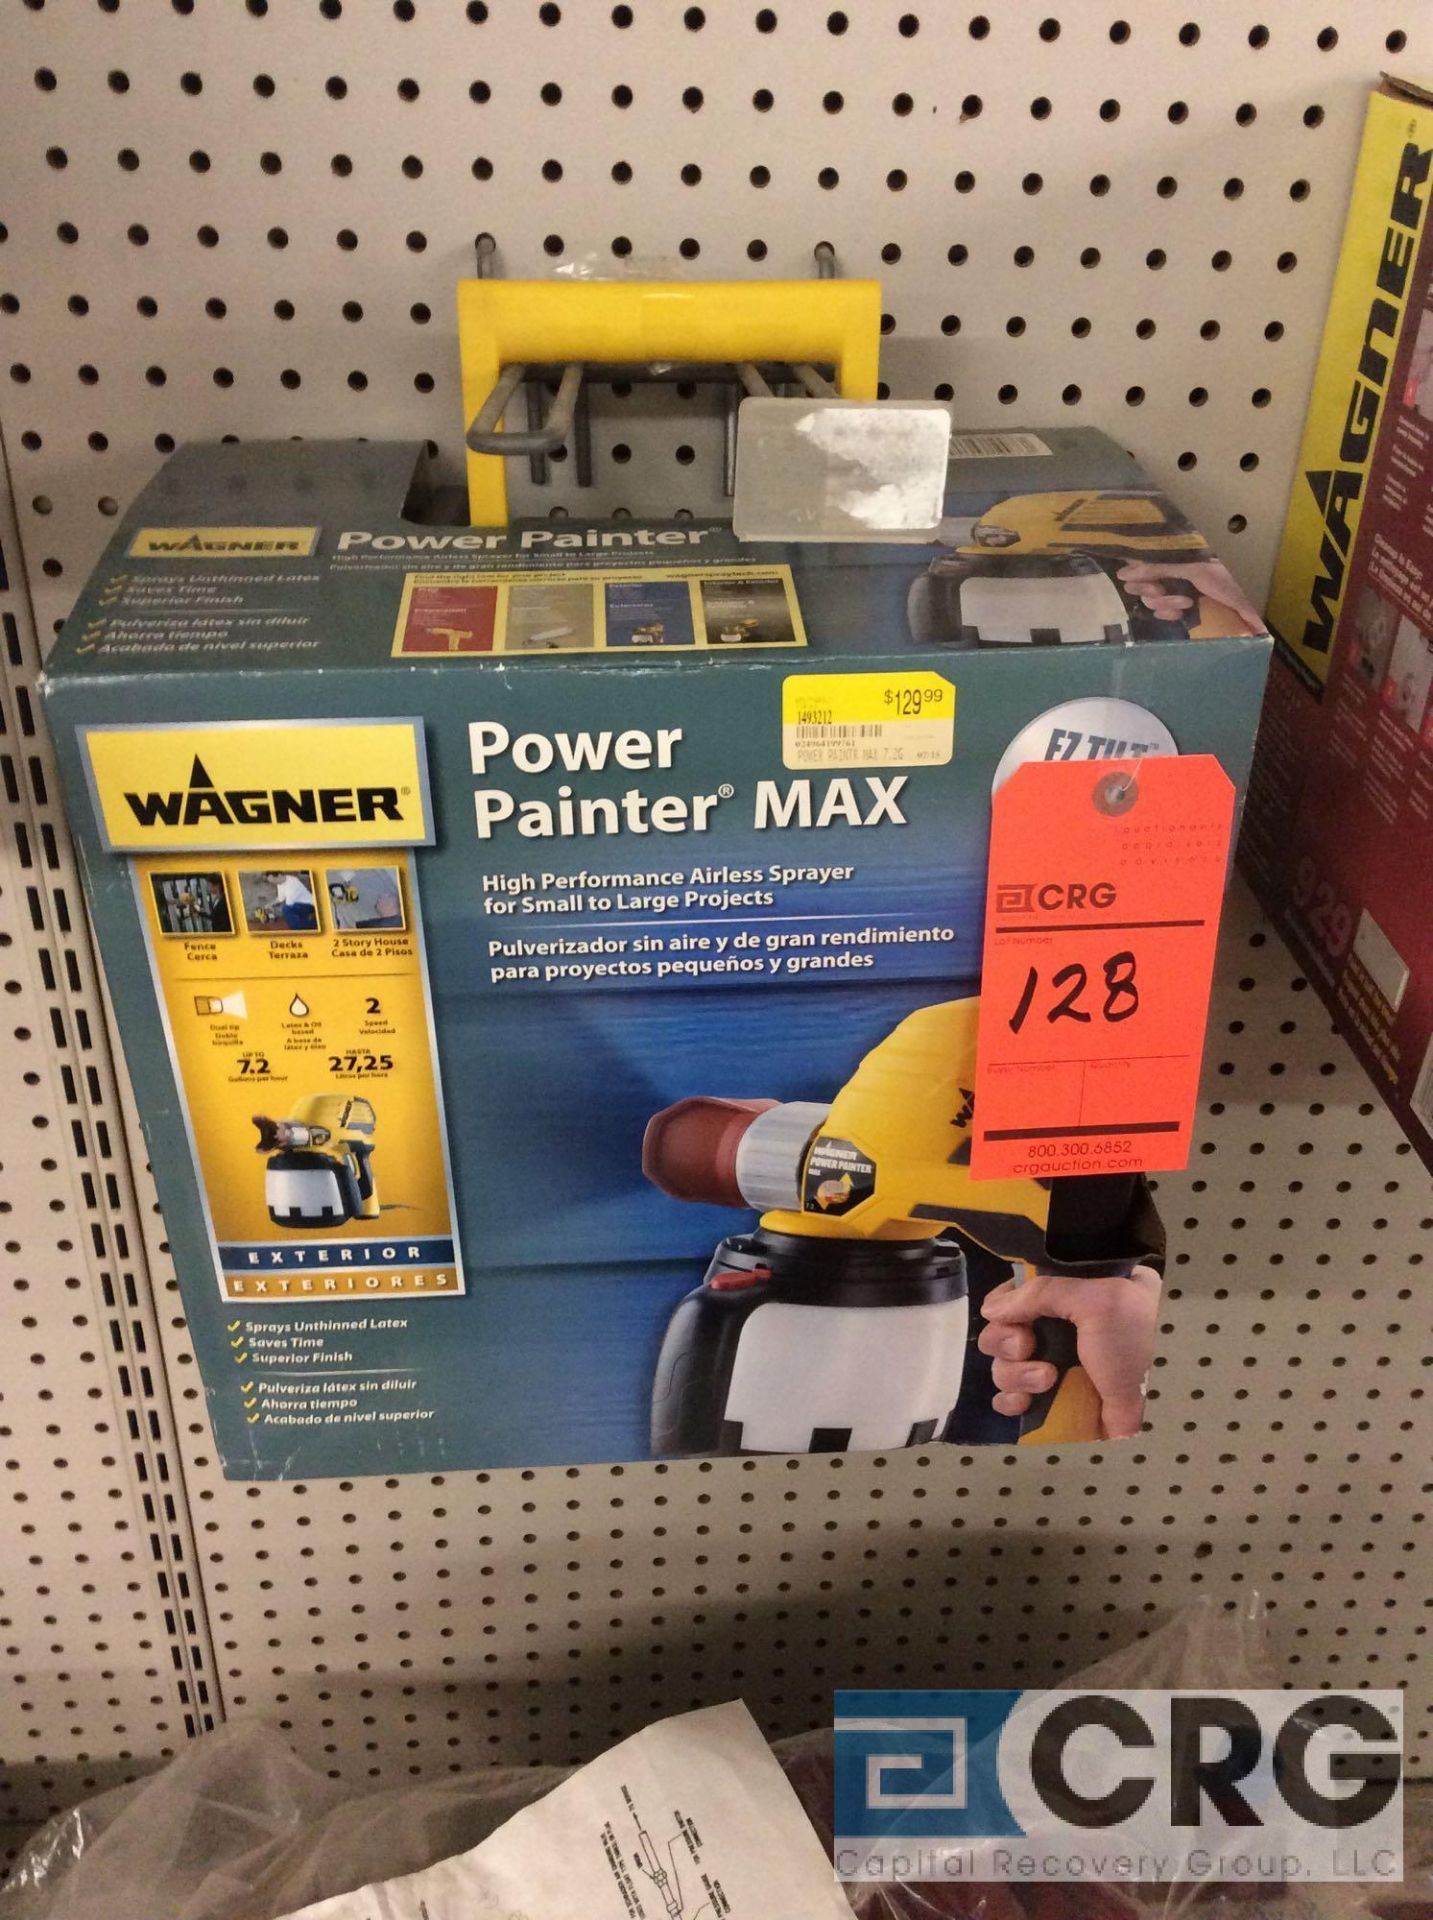 Wagner Power Painter Max airless sprayer